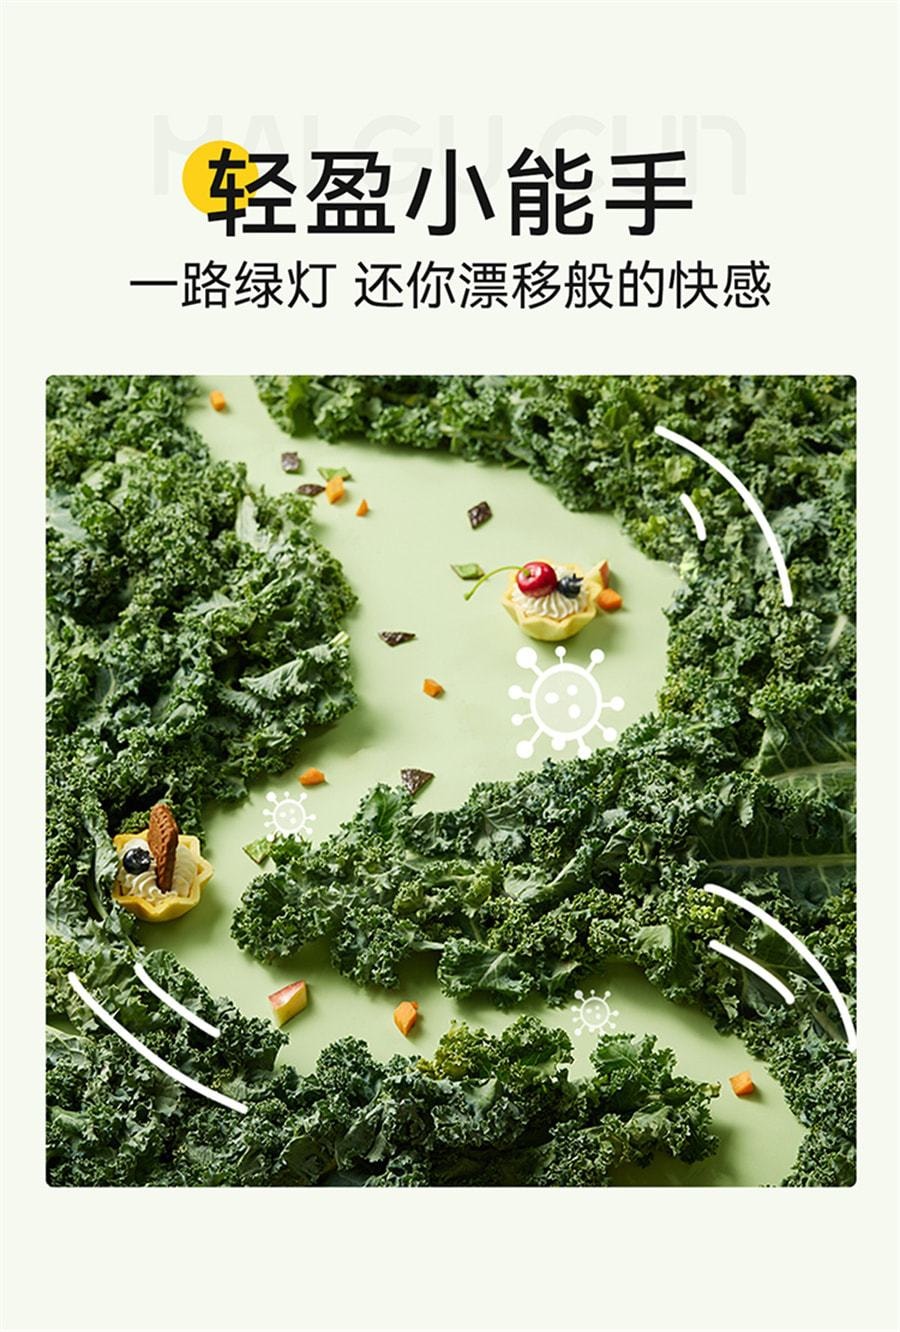 【中国直邮】麦谷村 羽衣甘蓝粉 膳食纤维健身低脂肪蔬菜粉代餐粉 3g*10袋(建议拍6盒效果更佳)